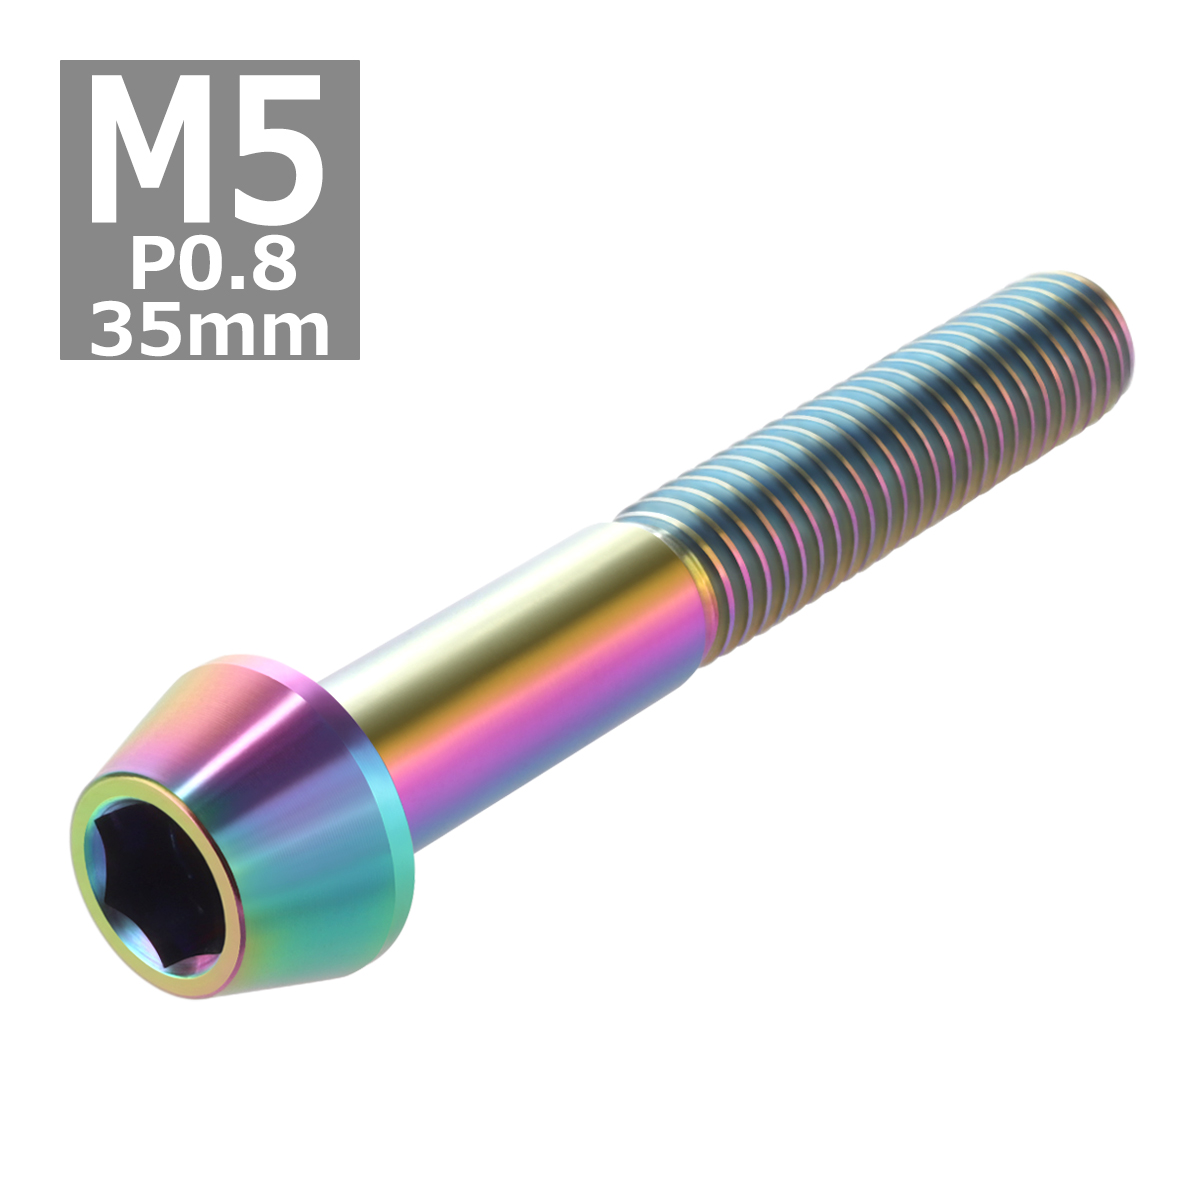 64チタンボルト M5×35mm P0.8 テーパーヘッド 六角穴付き キャップボルト 焼きチタンカラー 虹色 1個 JA366